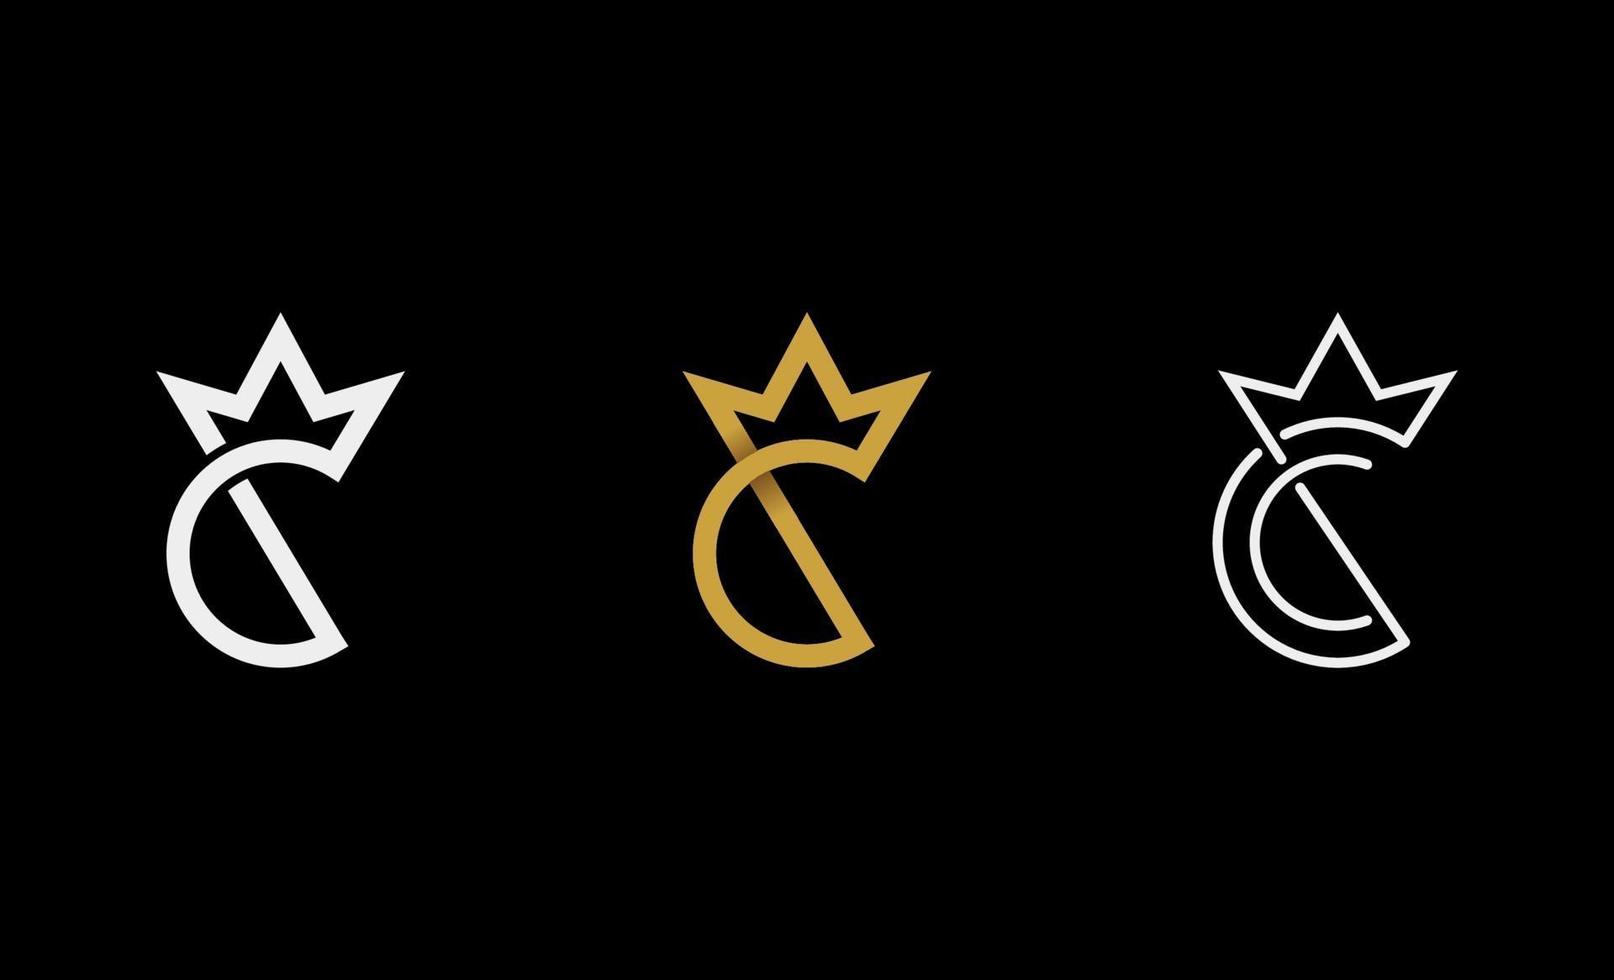 c re royal logo design illustrazione vettoriale